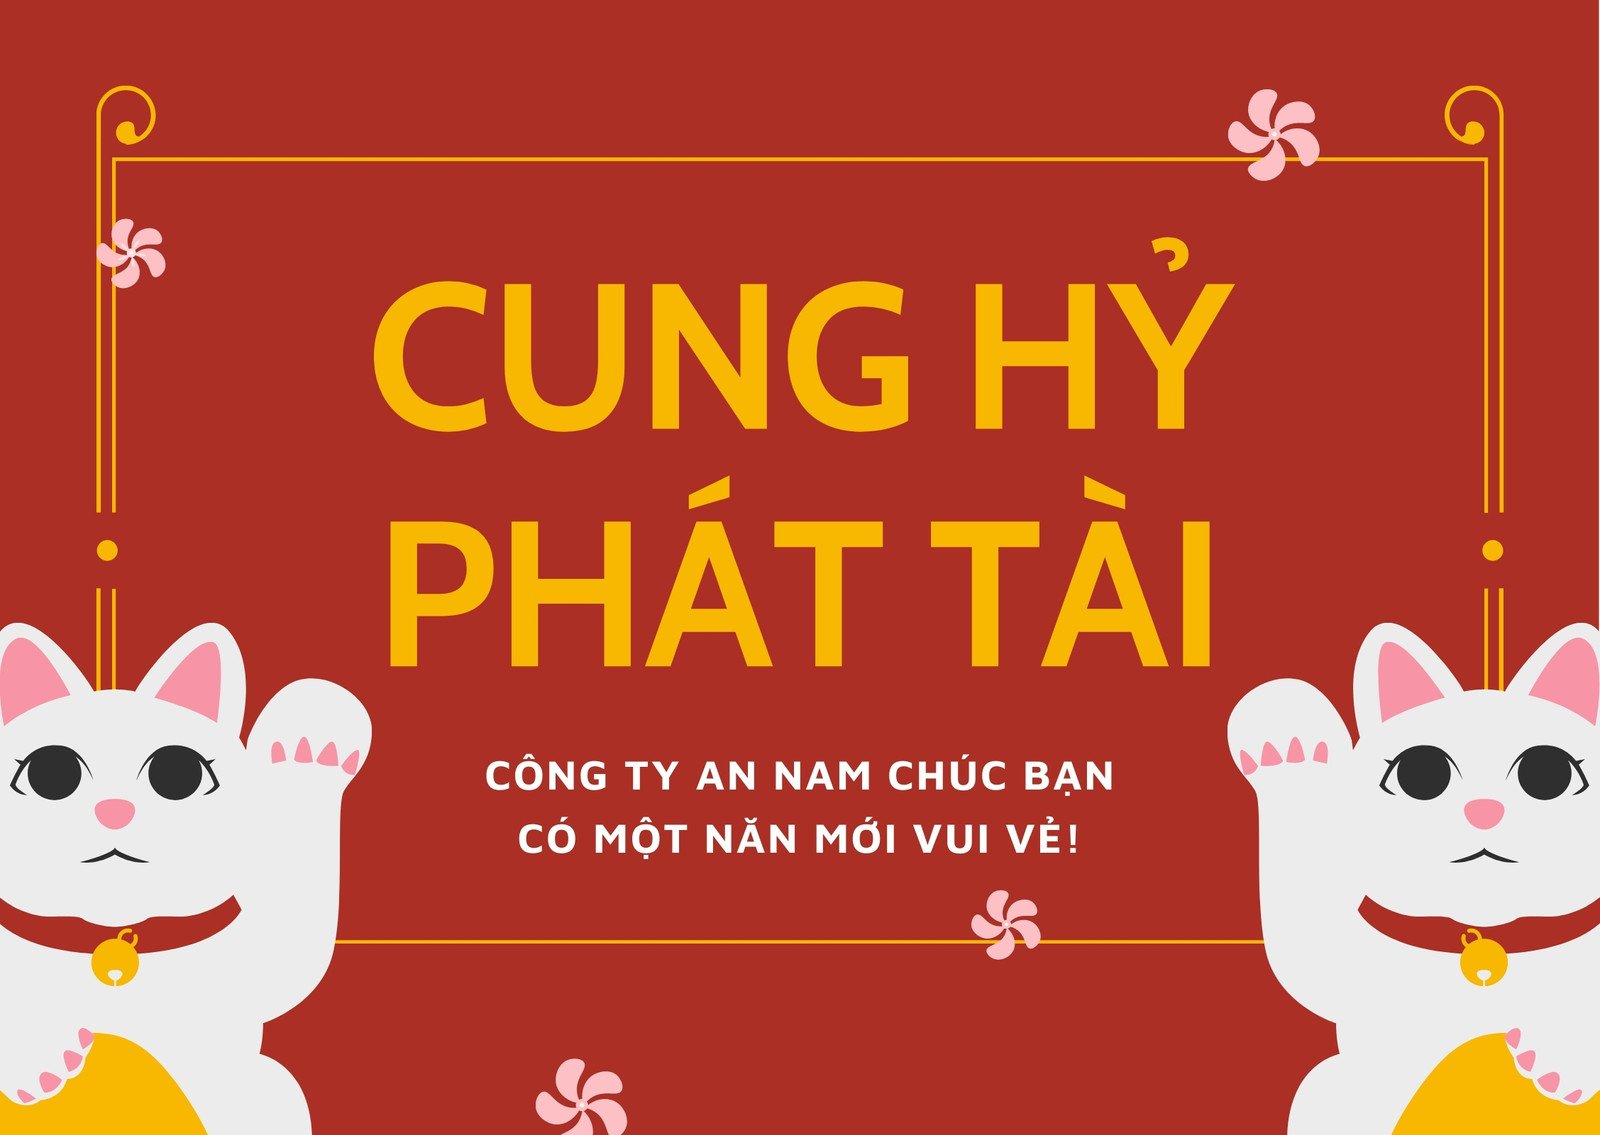 Thiệp chúc tết là một phần không thể thiếu trong lễ hội Tết của người Việt Nam. Đến với chúng tôi, bạn sẽ được trải nghiệm những thiệp chúc tết đặc biệt, được thiết kế từ tâm huyết và chăm chút tỉ mỉ từng chi tiết. Hãy cùng chúng tôi chào đón một mùa xuân mới nhiều niềm vui và tràn đầy may mắn.